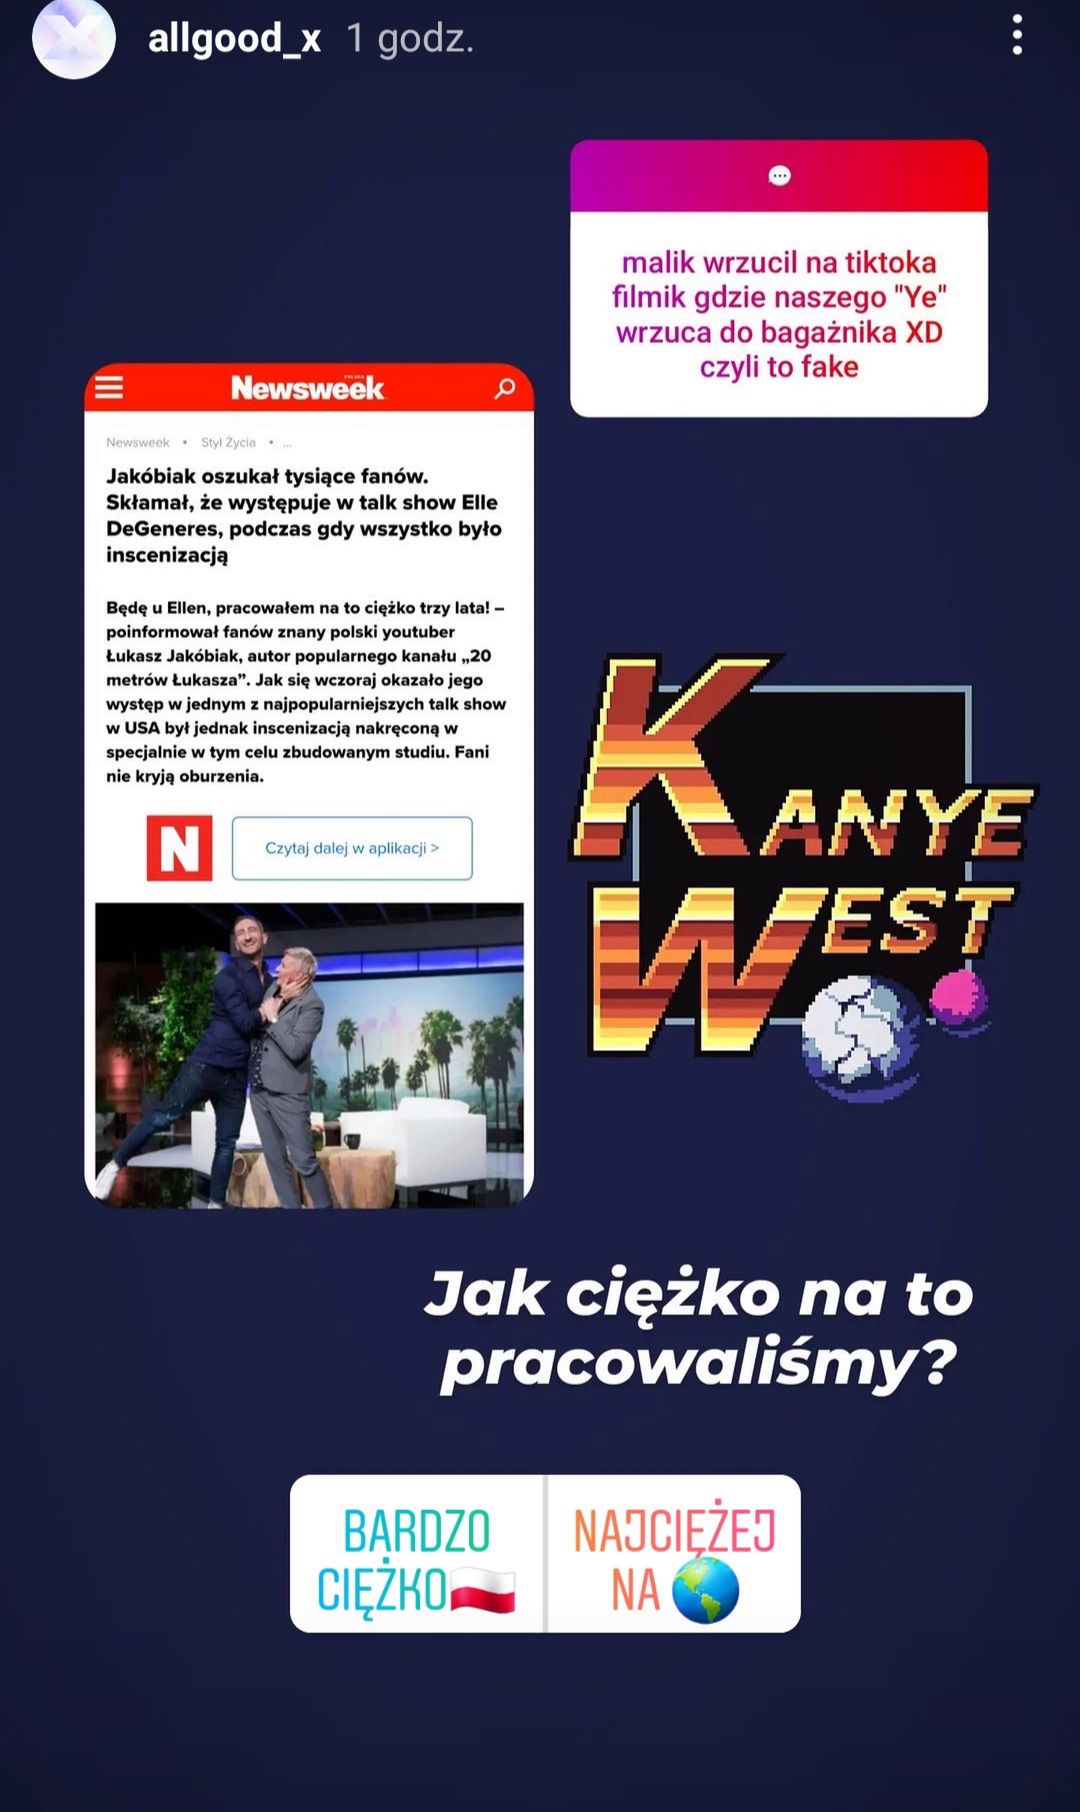 Kanye West w Warszawie?